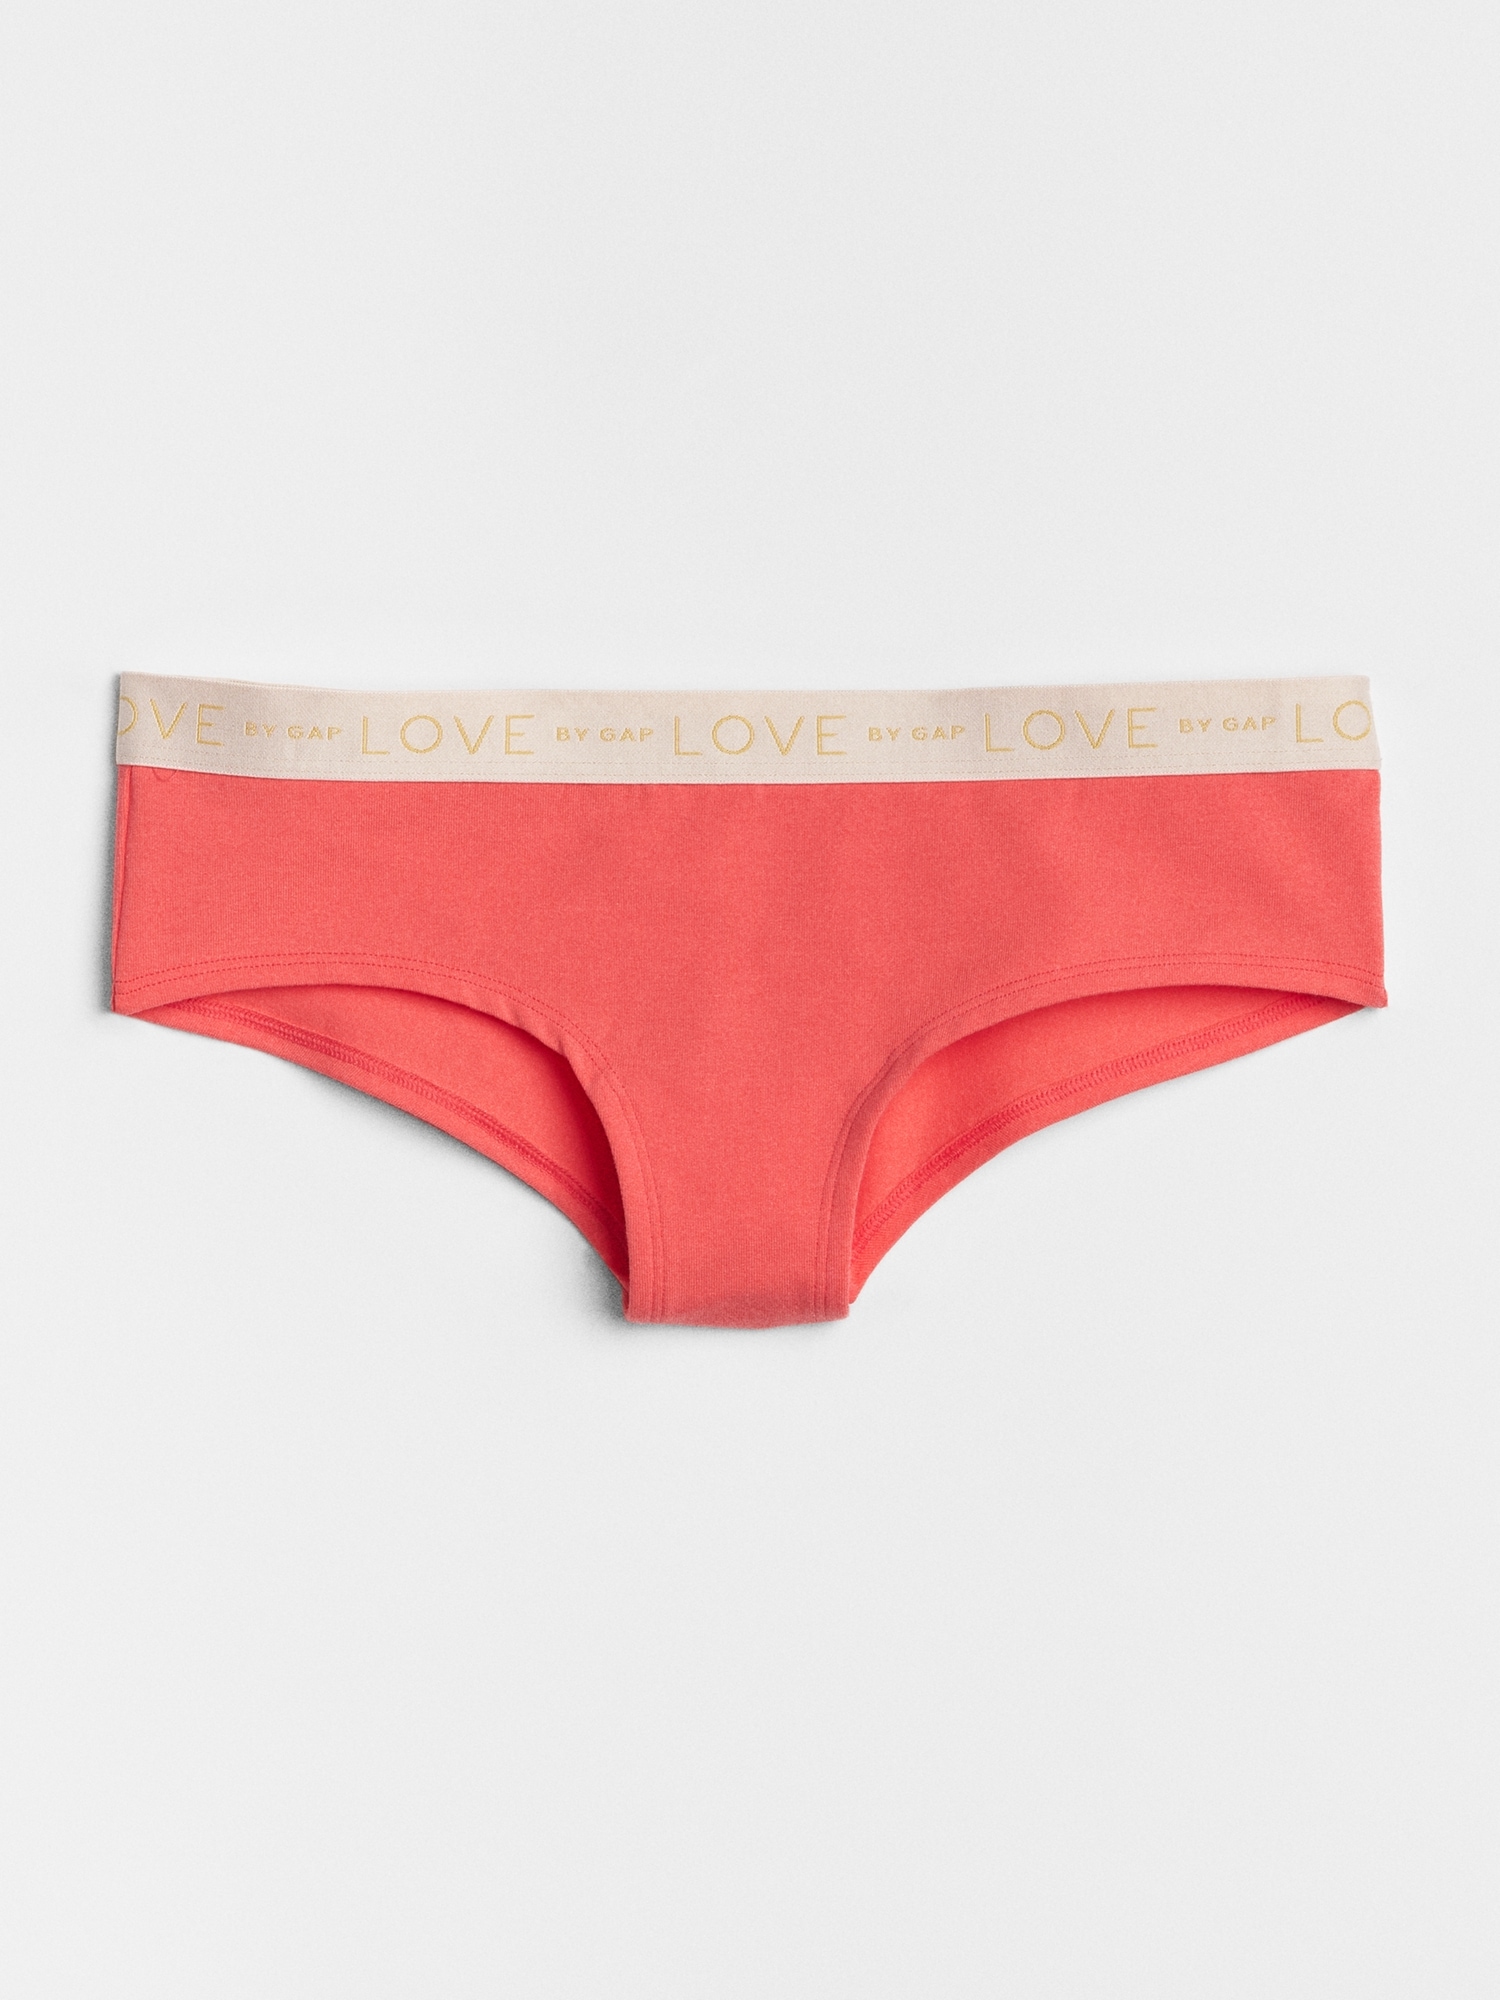 Gap Love Panties for Women